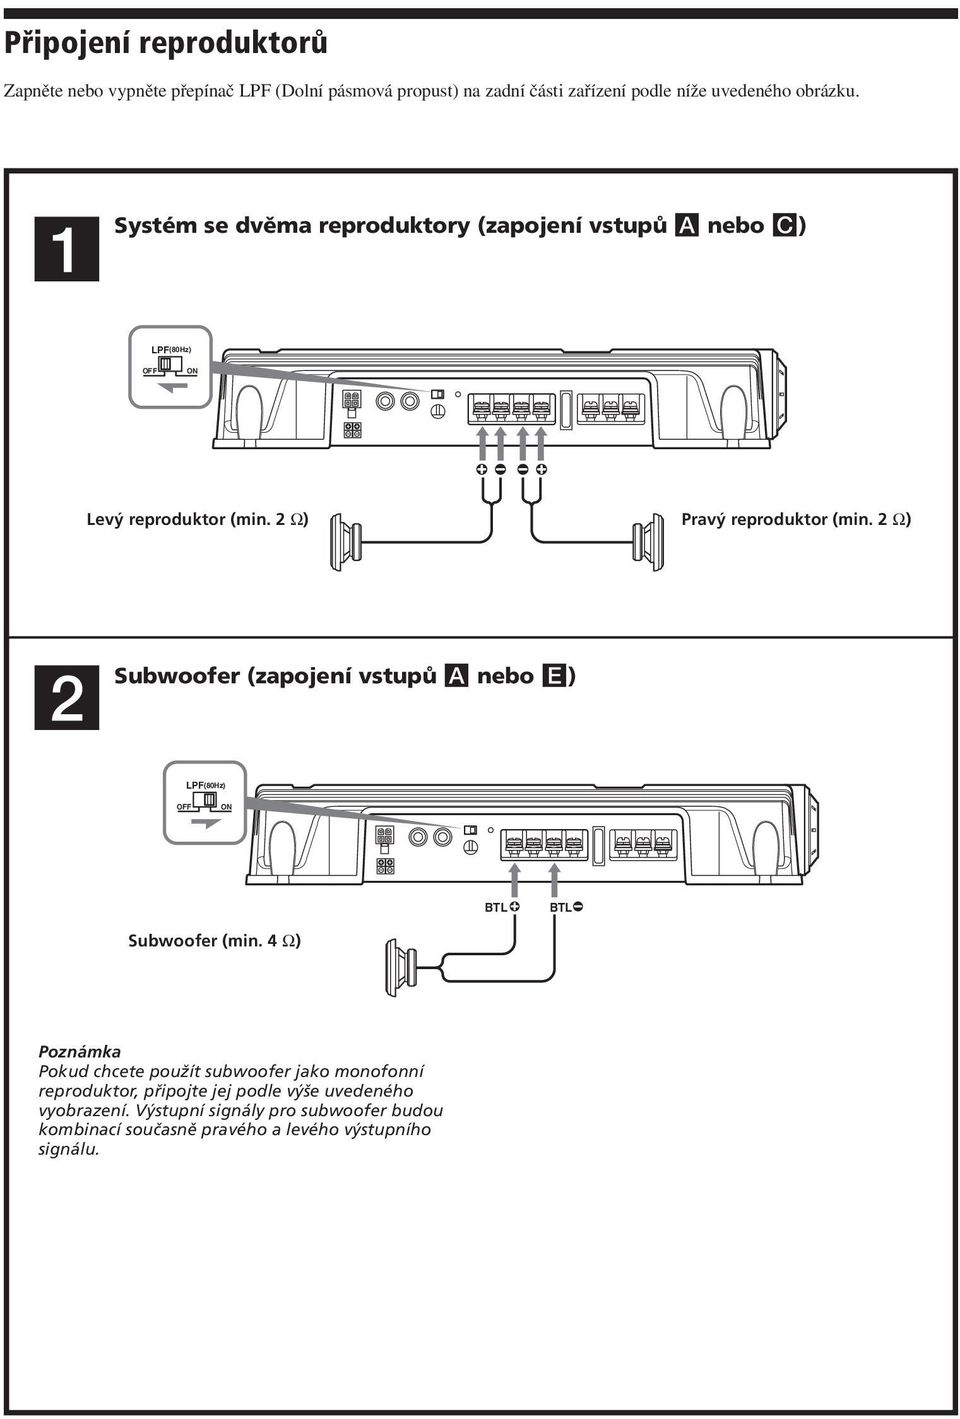 2 Ω) 2 Subwoofer (zapojení vstupů A nebo E) LPF(80Hz) OFF ON BTL BTL Subwoofer (min.